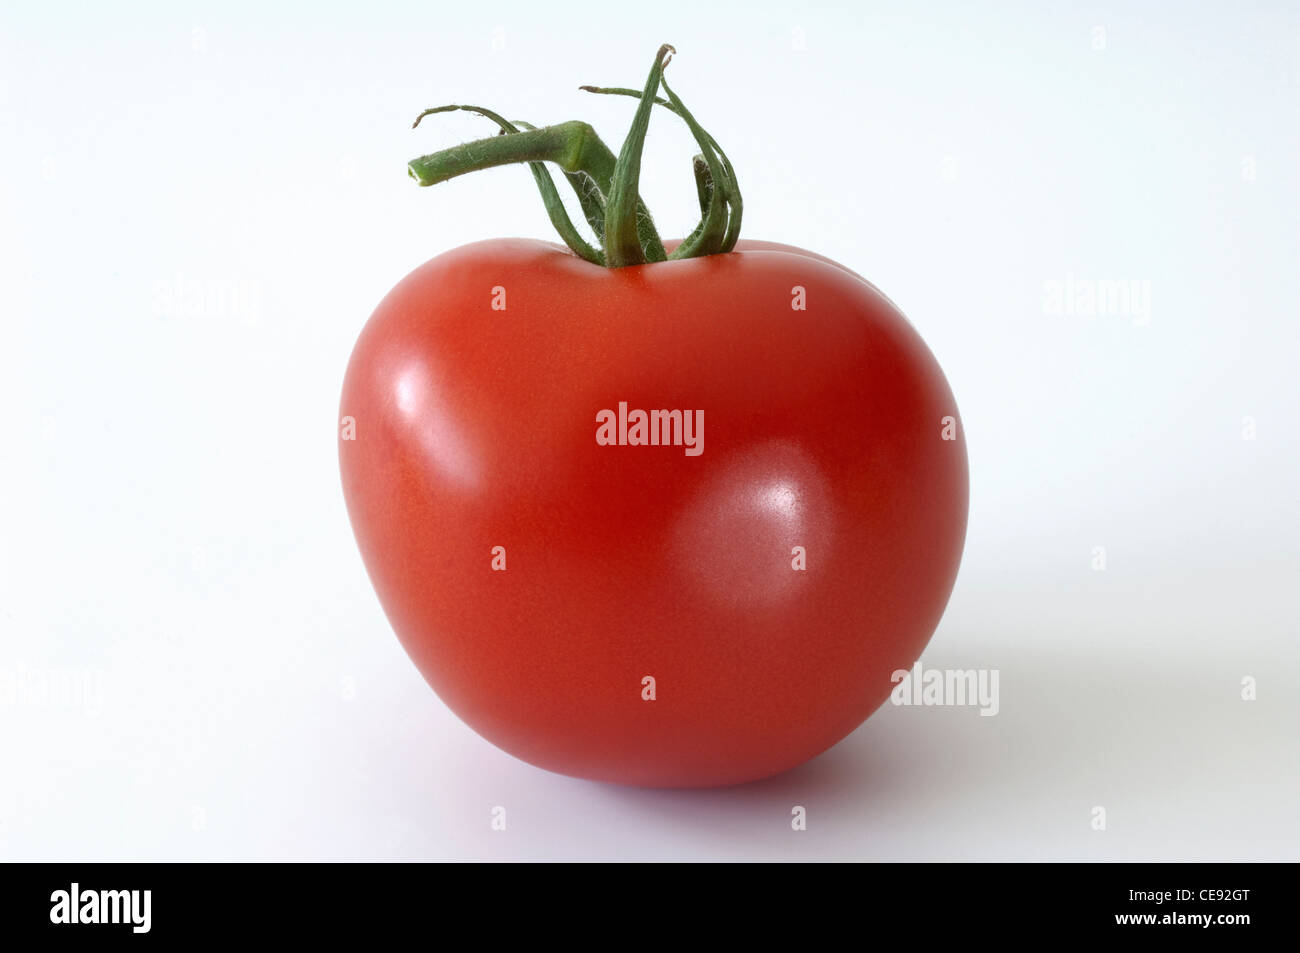 La tomate (Lycopersicon esculentum), des fruits mûrs. Studio photo sur un fond blanc. Banque D'Images